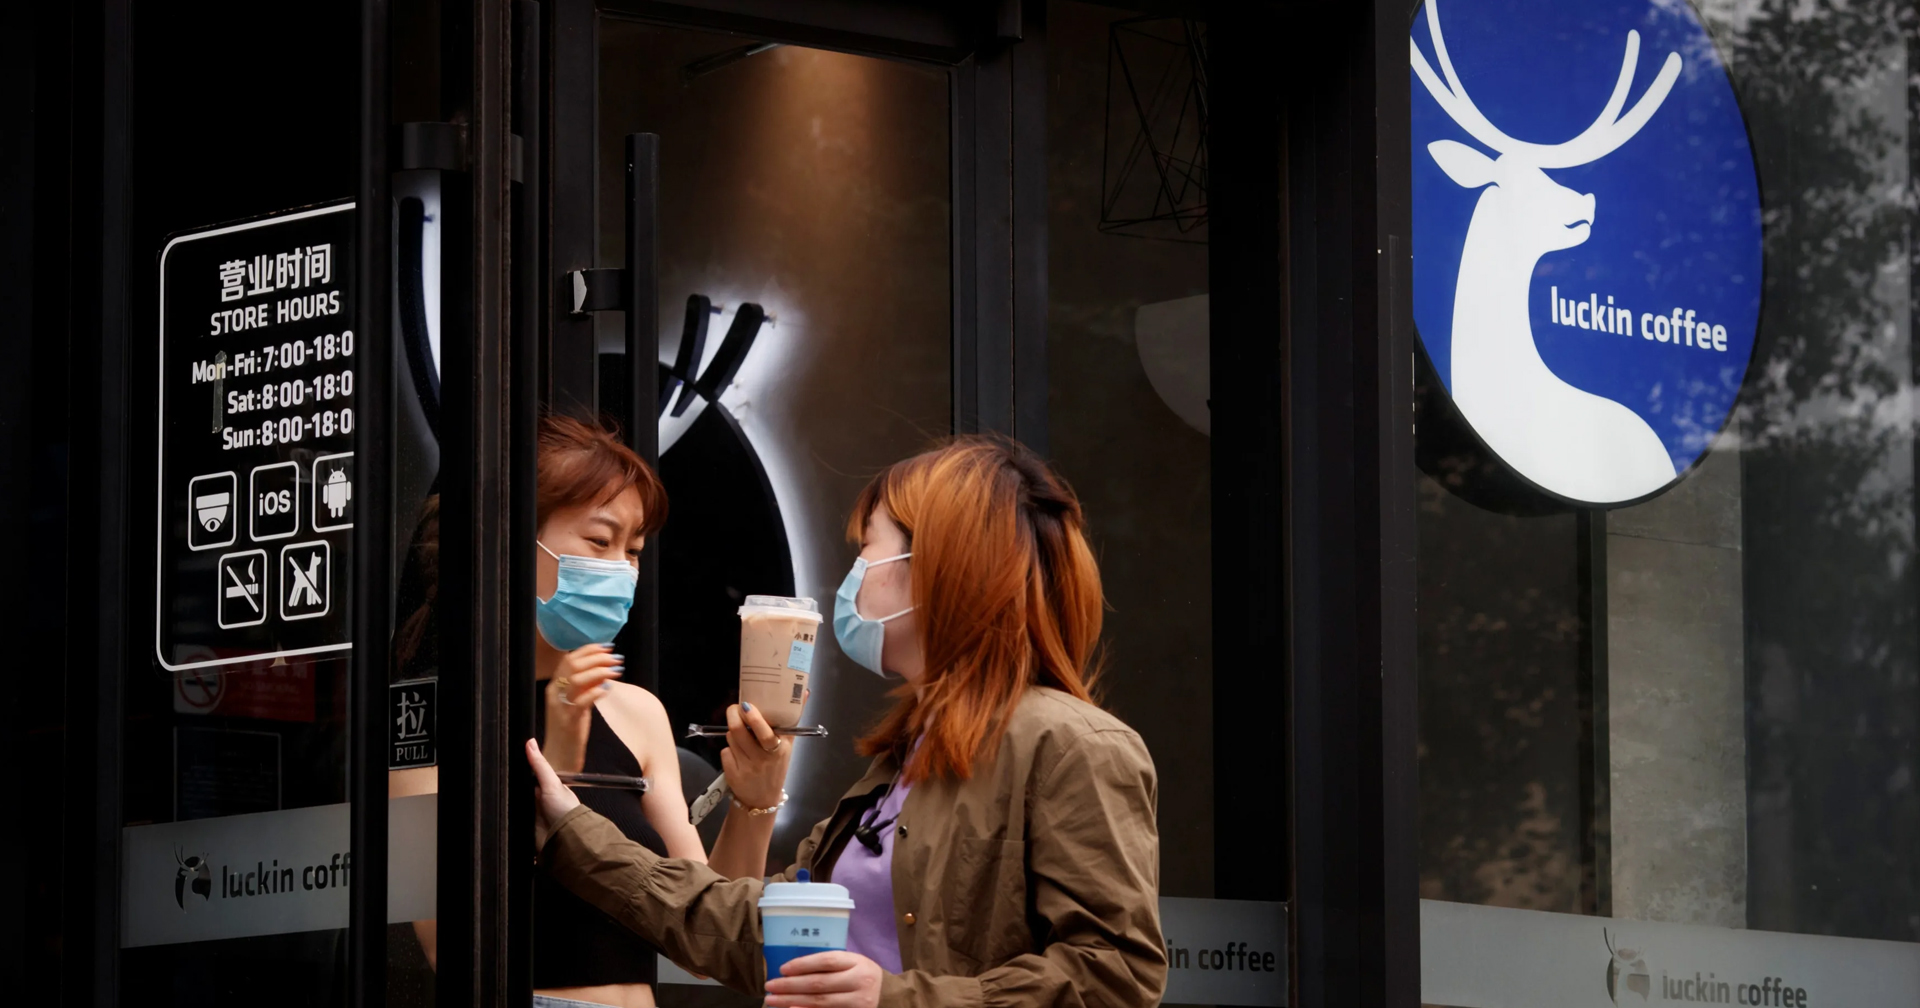 Luckin Coffee แบรนด์ร้านกาแฟดังของจีนที่เคยจะโค่น Starbucks ยื่นล้มละลายในสหรัฐฯ แล้ว